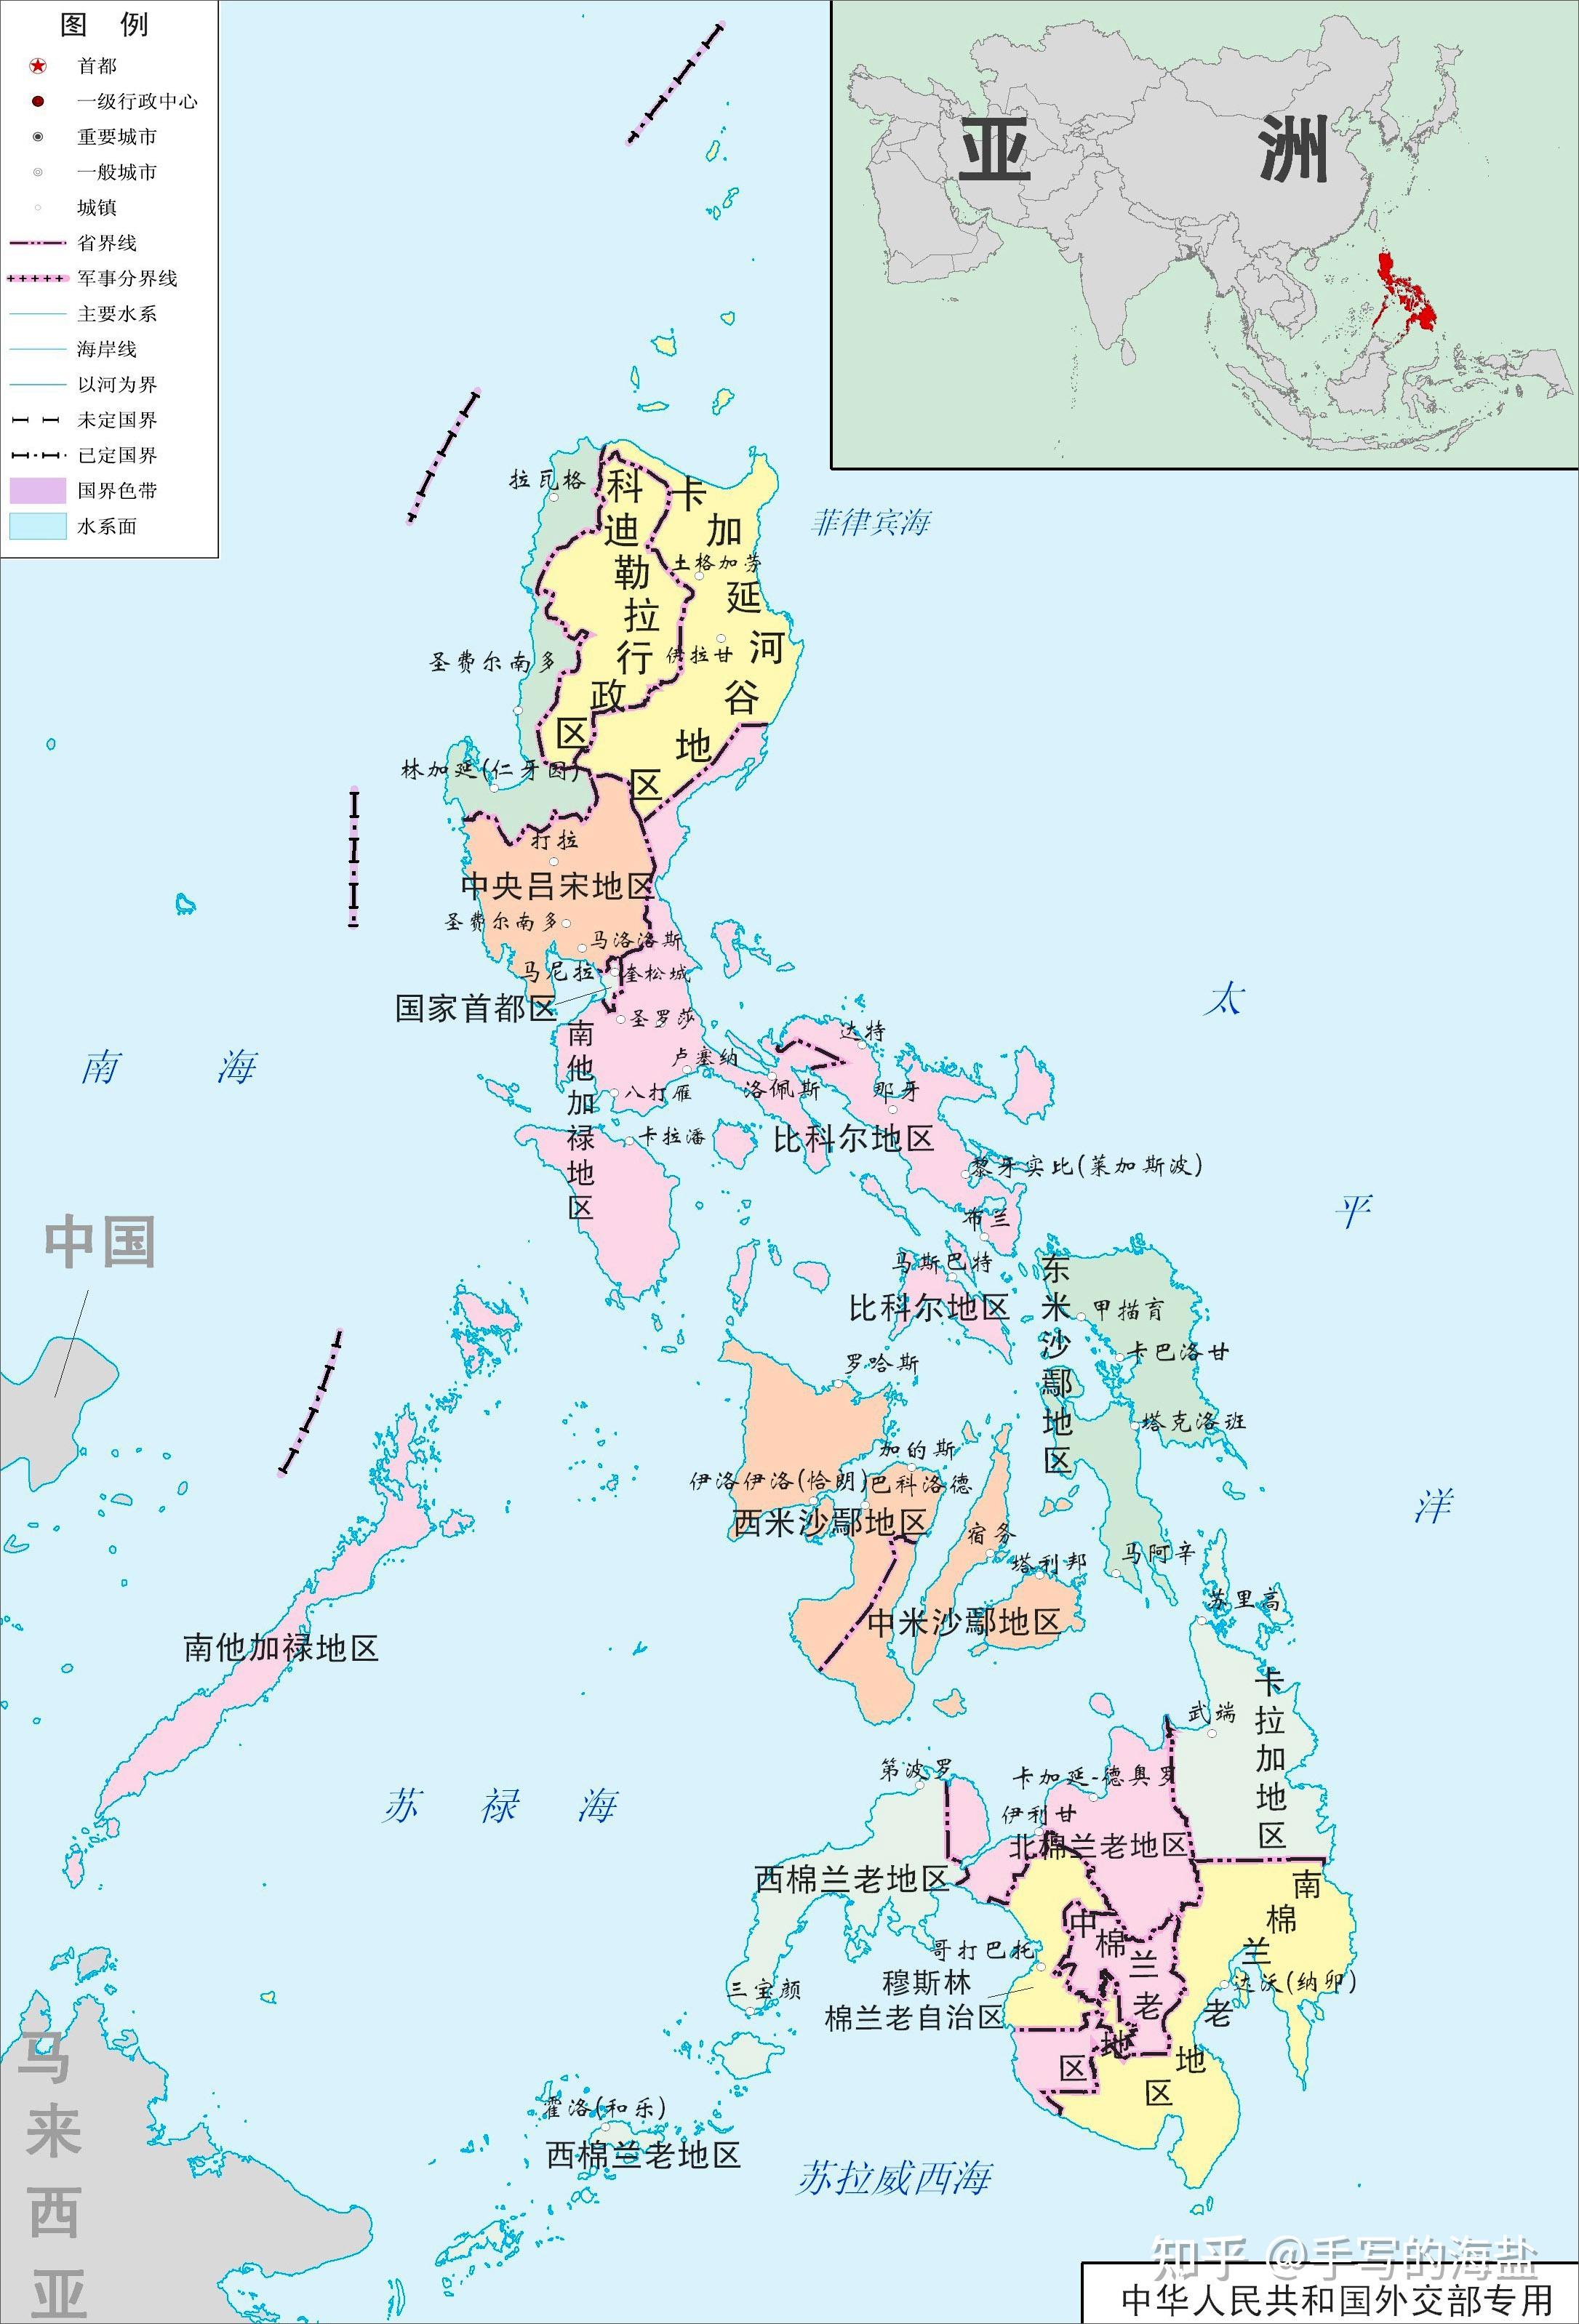 倘若菲律宾解体会分裂成多少国家?